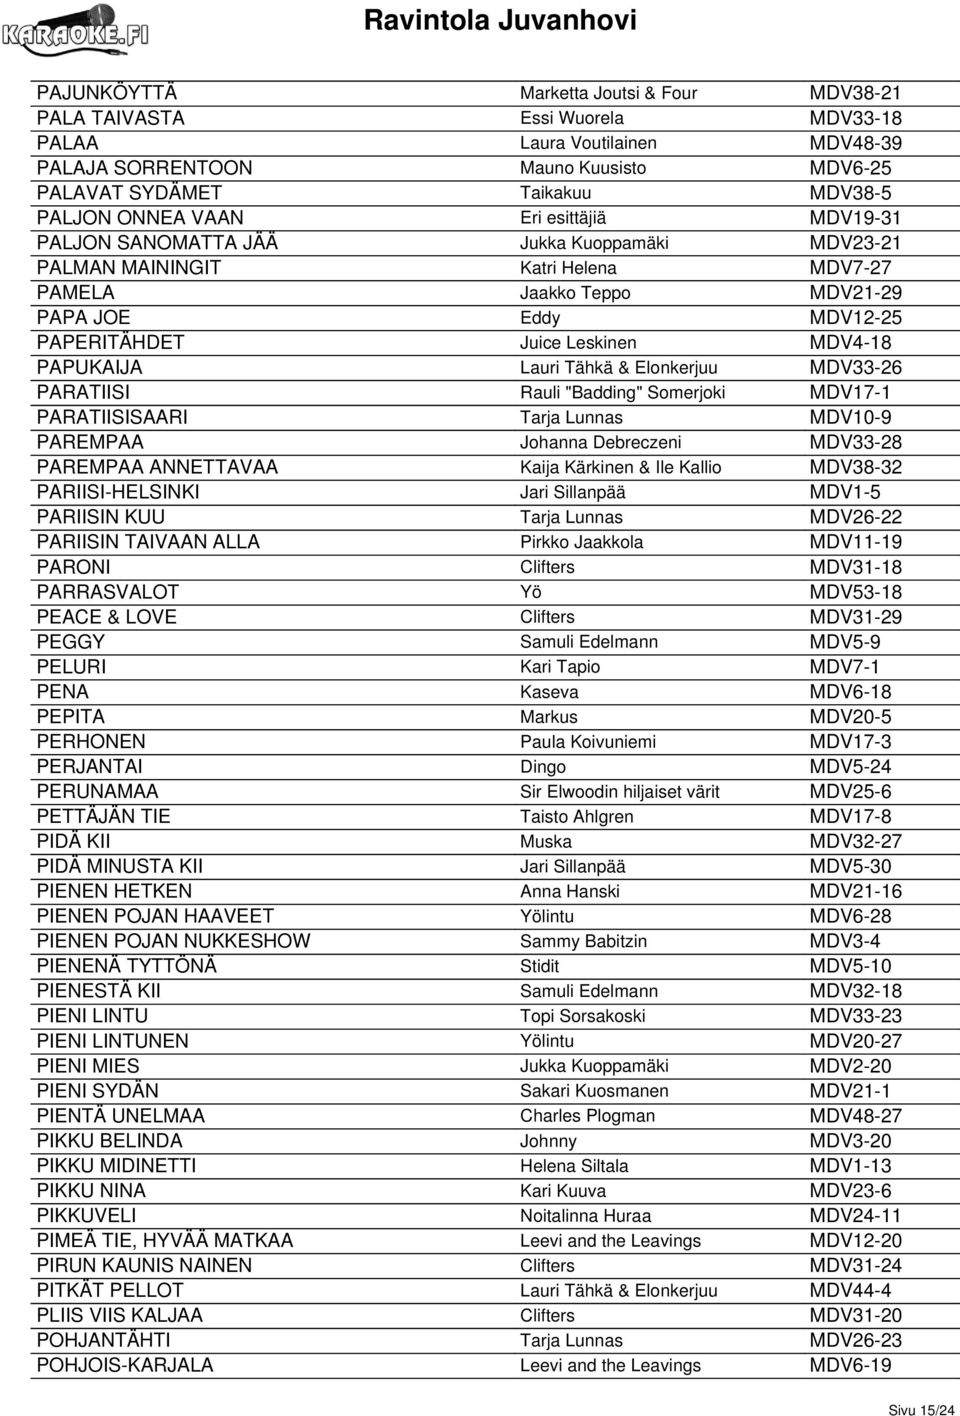 MDV4-18 PAPUKAIJA Lauri Tähkä & Elonkerjuu MDV33-26 PARATIISI Rauli "Badding" Somerjoki MDV17-1 PARATIISISAARI Tarja Lunnas MDV10-9 PAREMPAA Johanna Debreczeni MDV33-28 PAREMPAA ANNETTAVAA Kaija